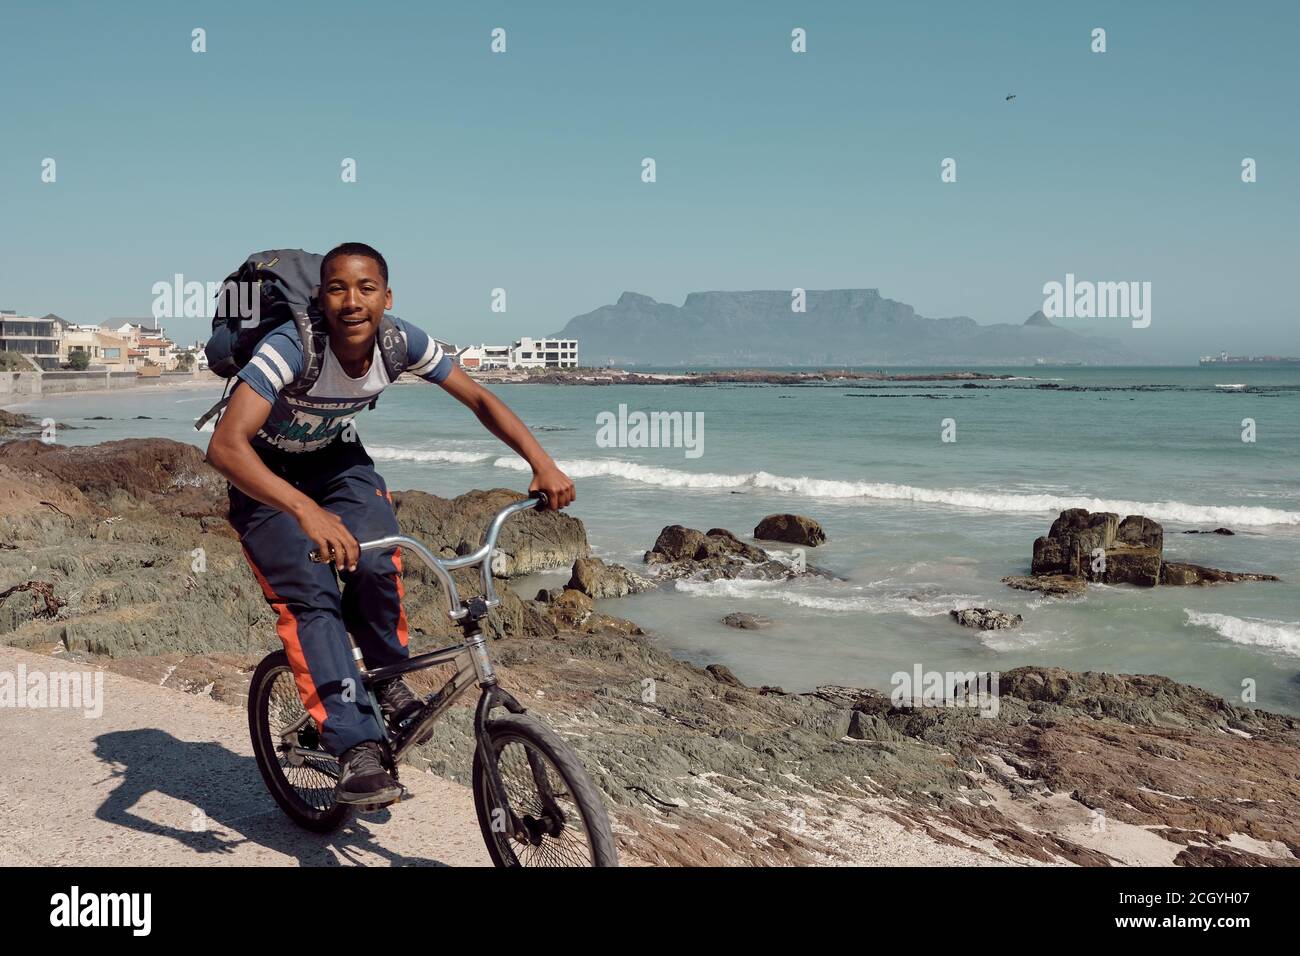 Les jeunes qui voyagent à vélo sur la très populaire plage de Bloubergstrand au Cap, en Afrique du Sud. Montagne de table en arrière-plan. Banque D'Images